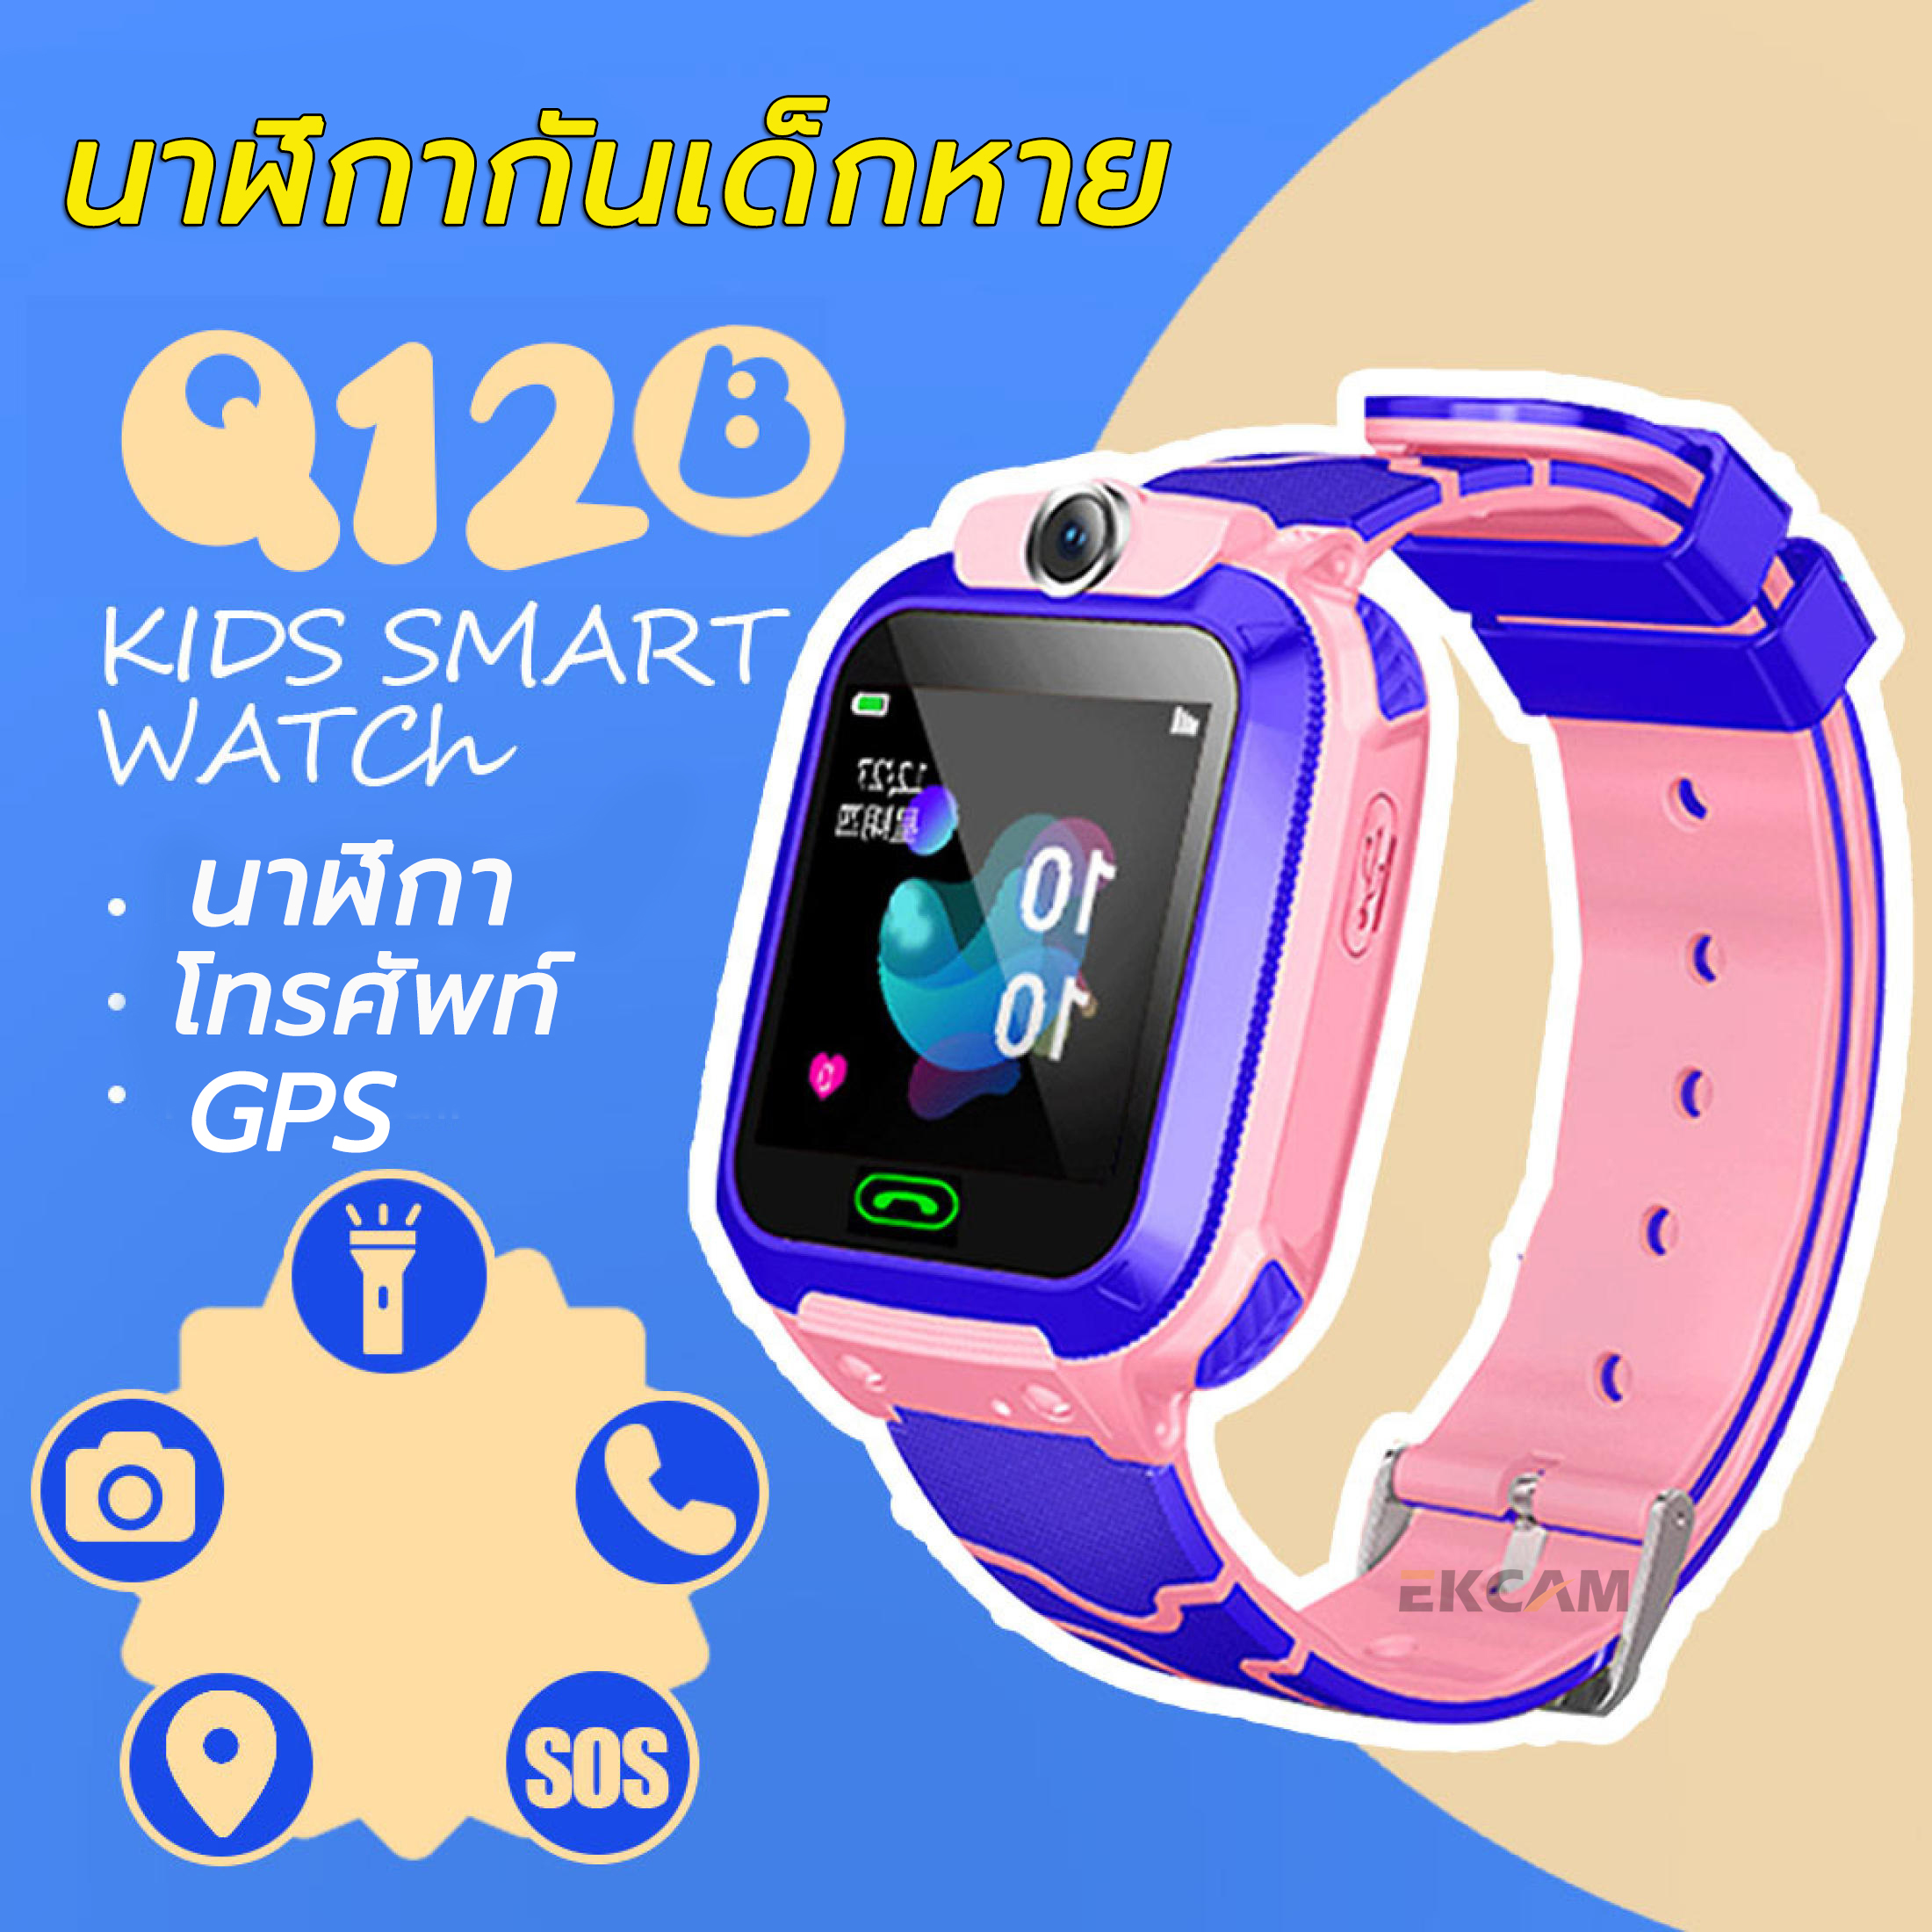 [สินค้ามีประกัน] นาฬิกาป้องกันเด็กหาย มีกล้องด้านหน้า นาฬิกาติดตามเด็ก โทรเข้า ออกได้ แอบฟังเสียง กันน้ำ GPS LBS Smart Watch Q12